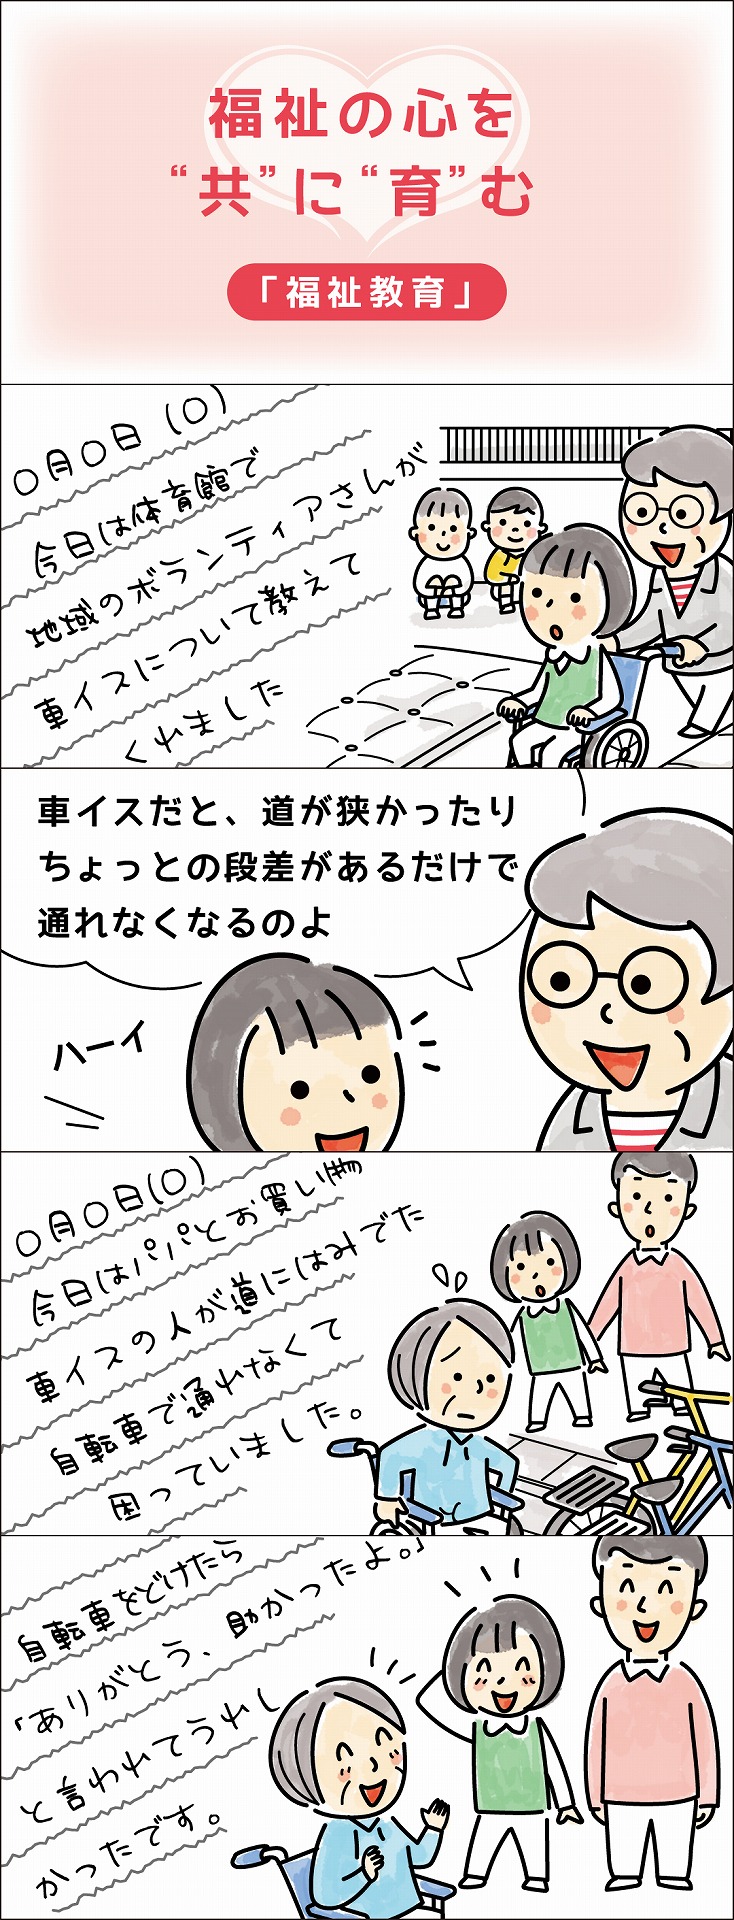 寝屋川社協4コマ漫画